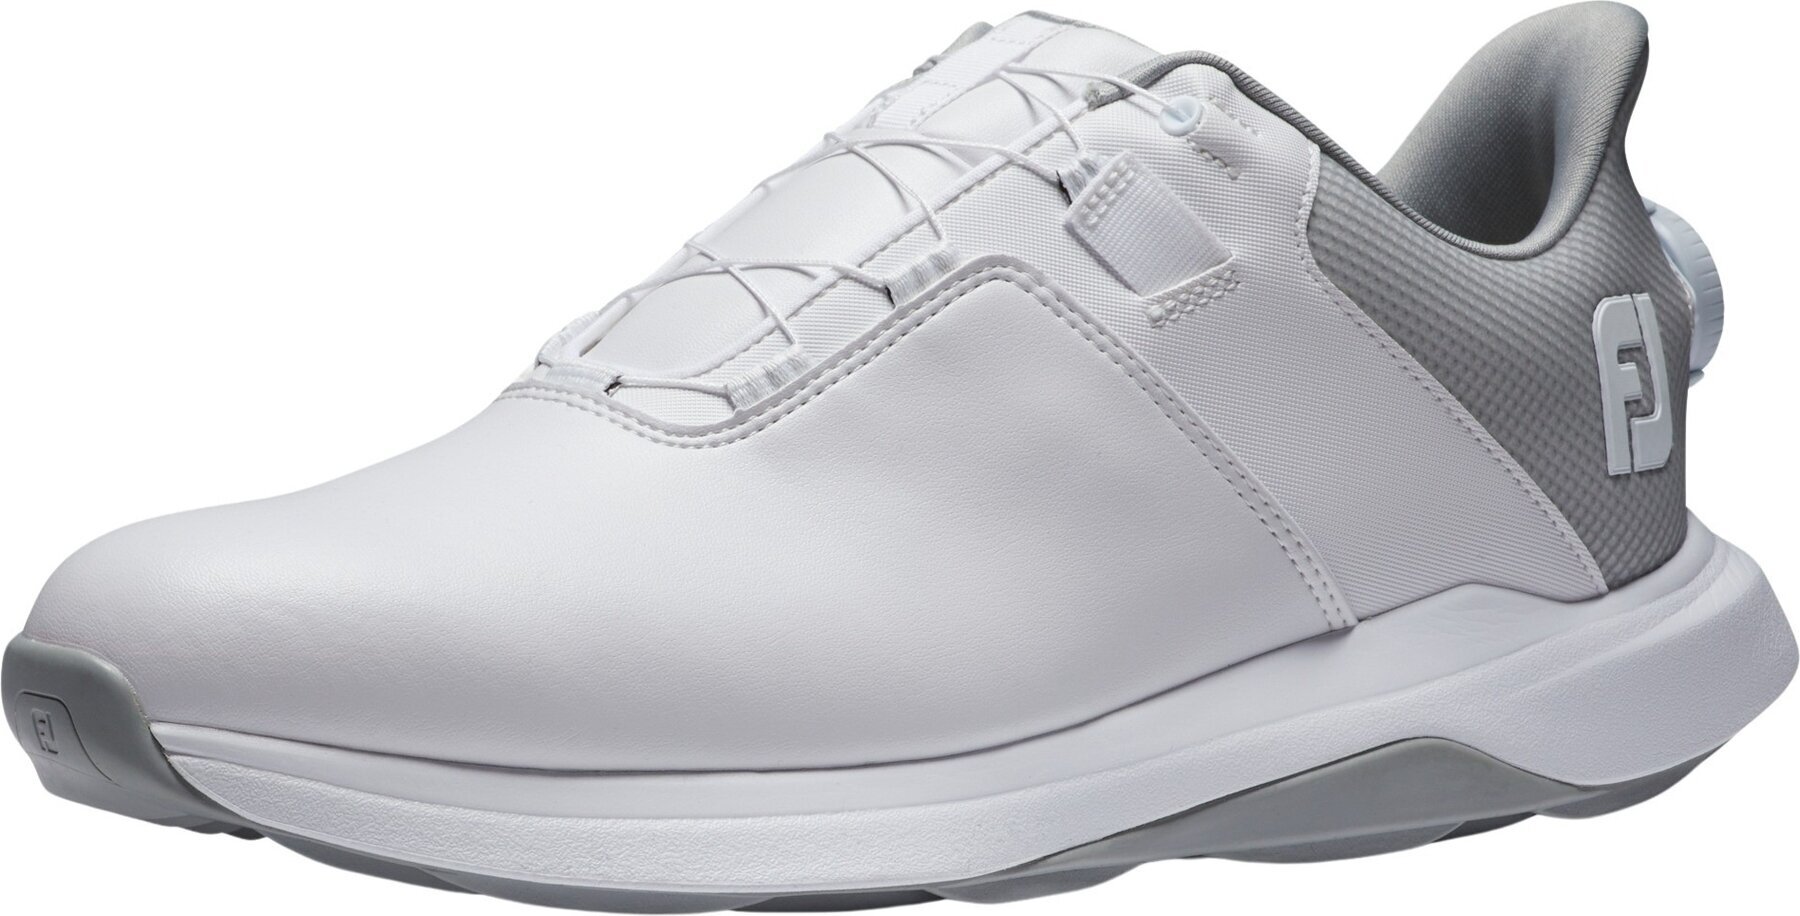 Chaussures de golf pour hommes Footjoy ProLite Mens Golf Shoes White/White/Grey 42